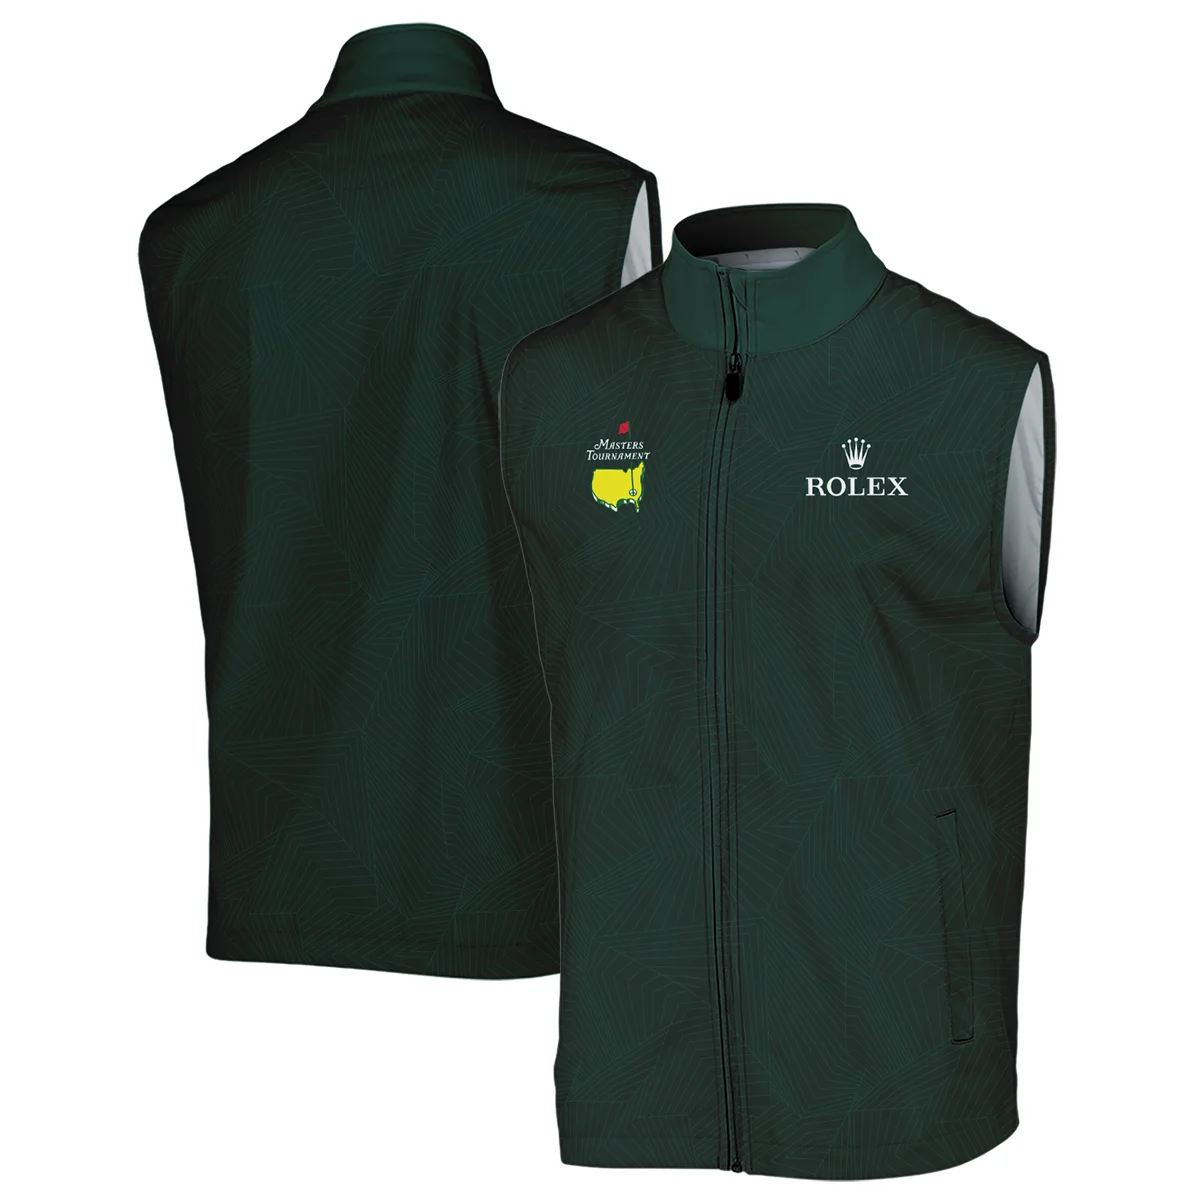 Masters Tournament Rolex Pattern Sport Jersey Dark Green Zipper Polo Shirt Style Classic Zipper Polo Shirt For Men